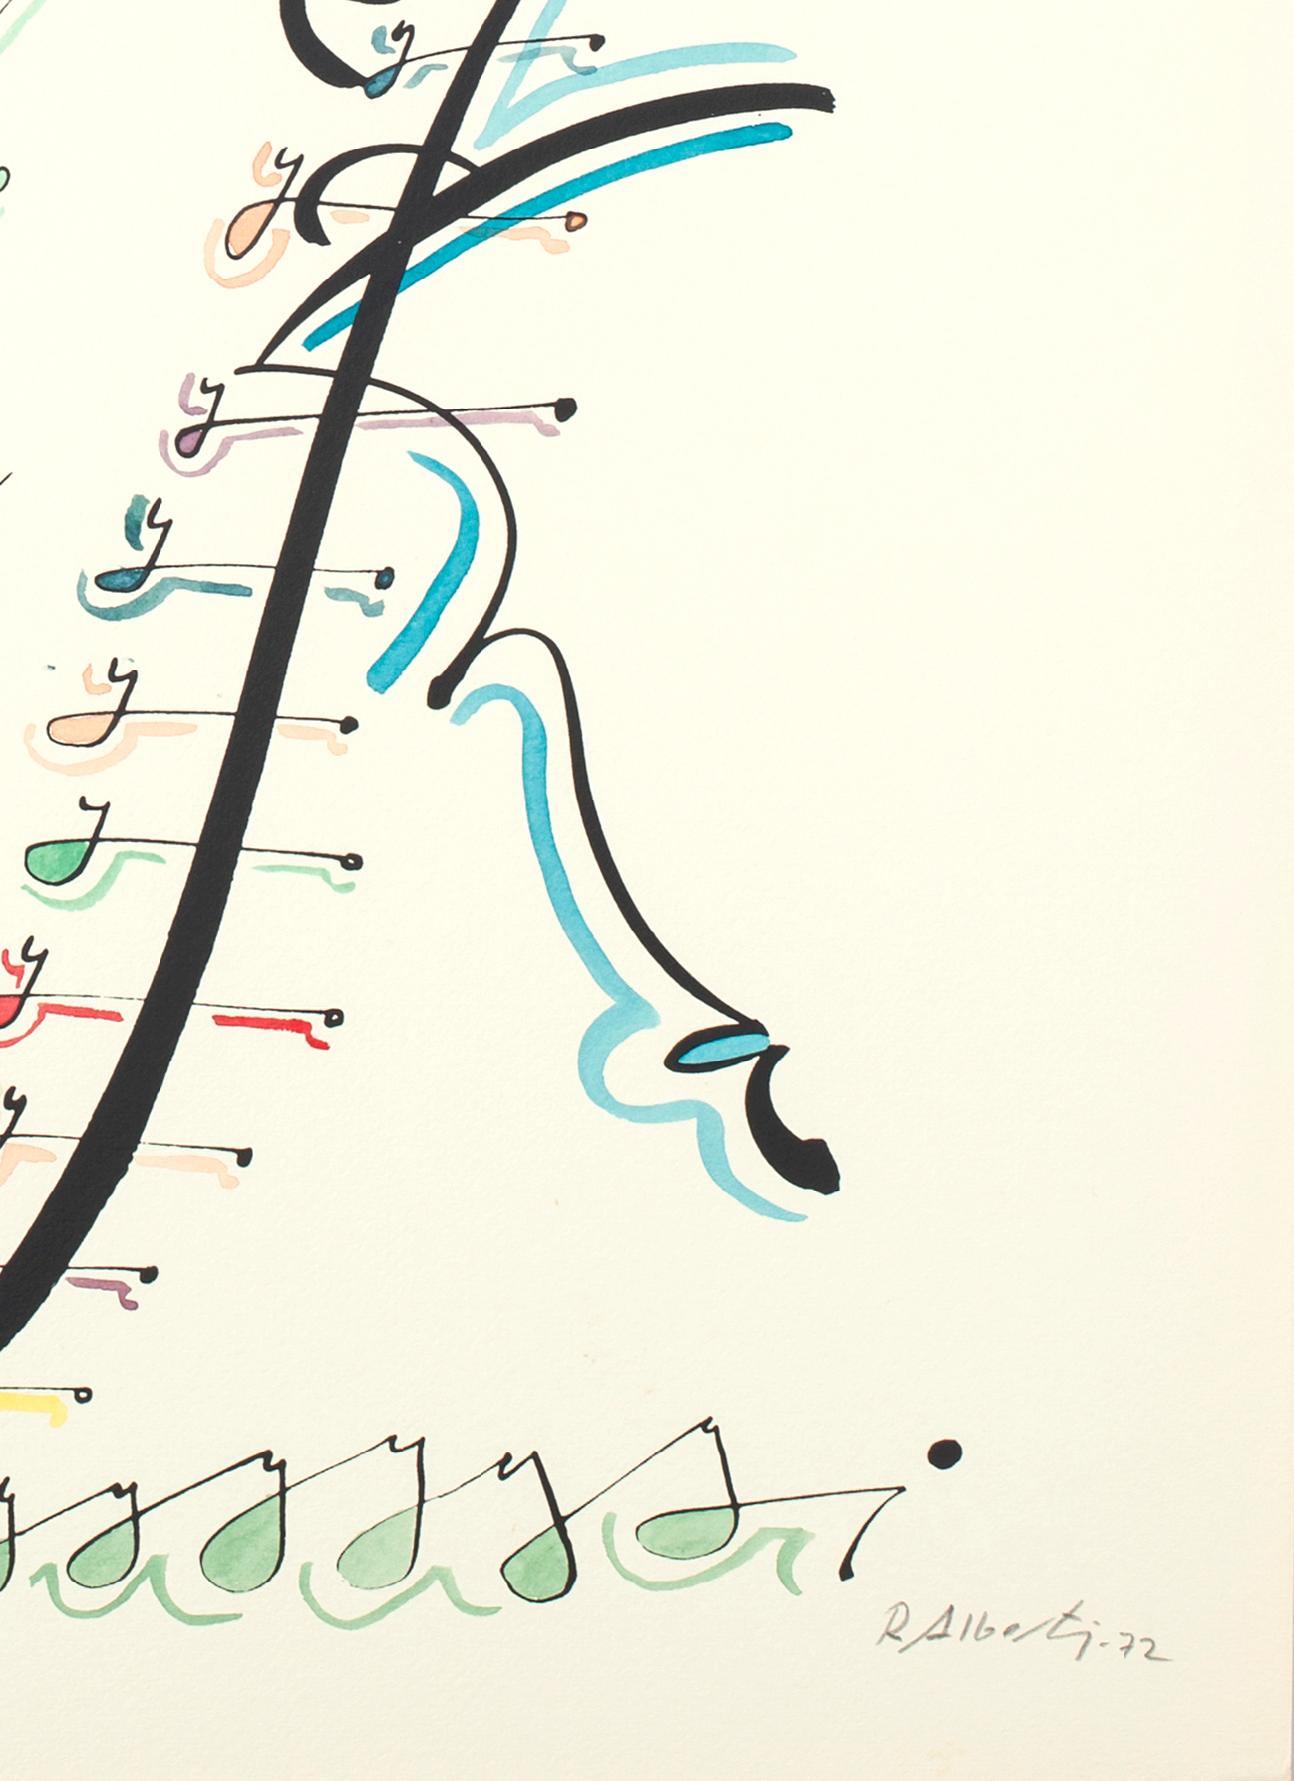 Lettre Y - Lithographie colorée à la main de Raphael Alberti - 1972 - Contemporain Print par Rafael Alberti